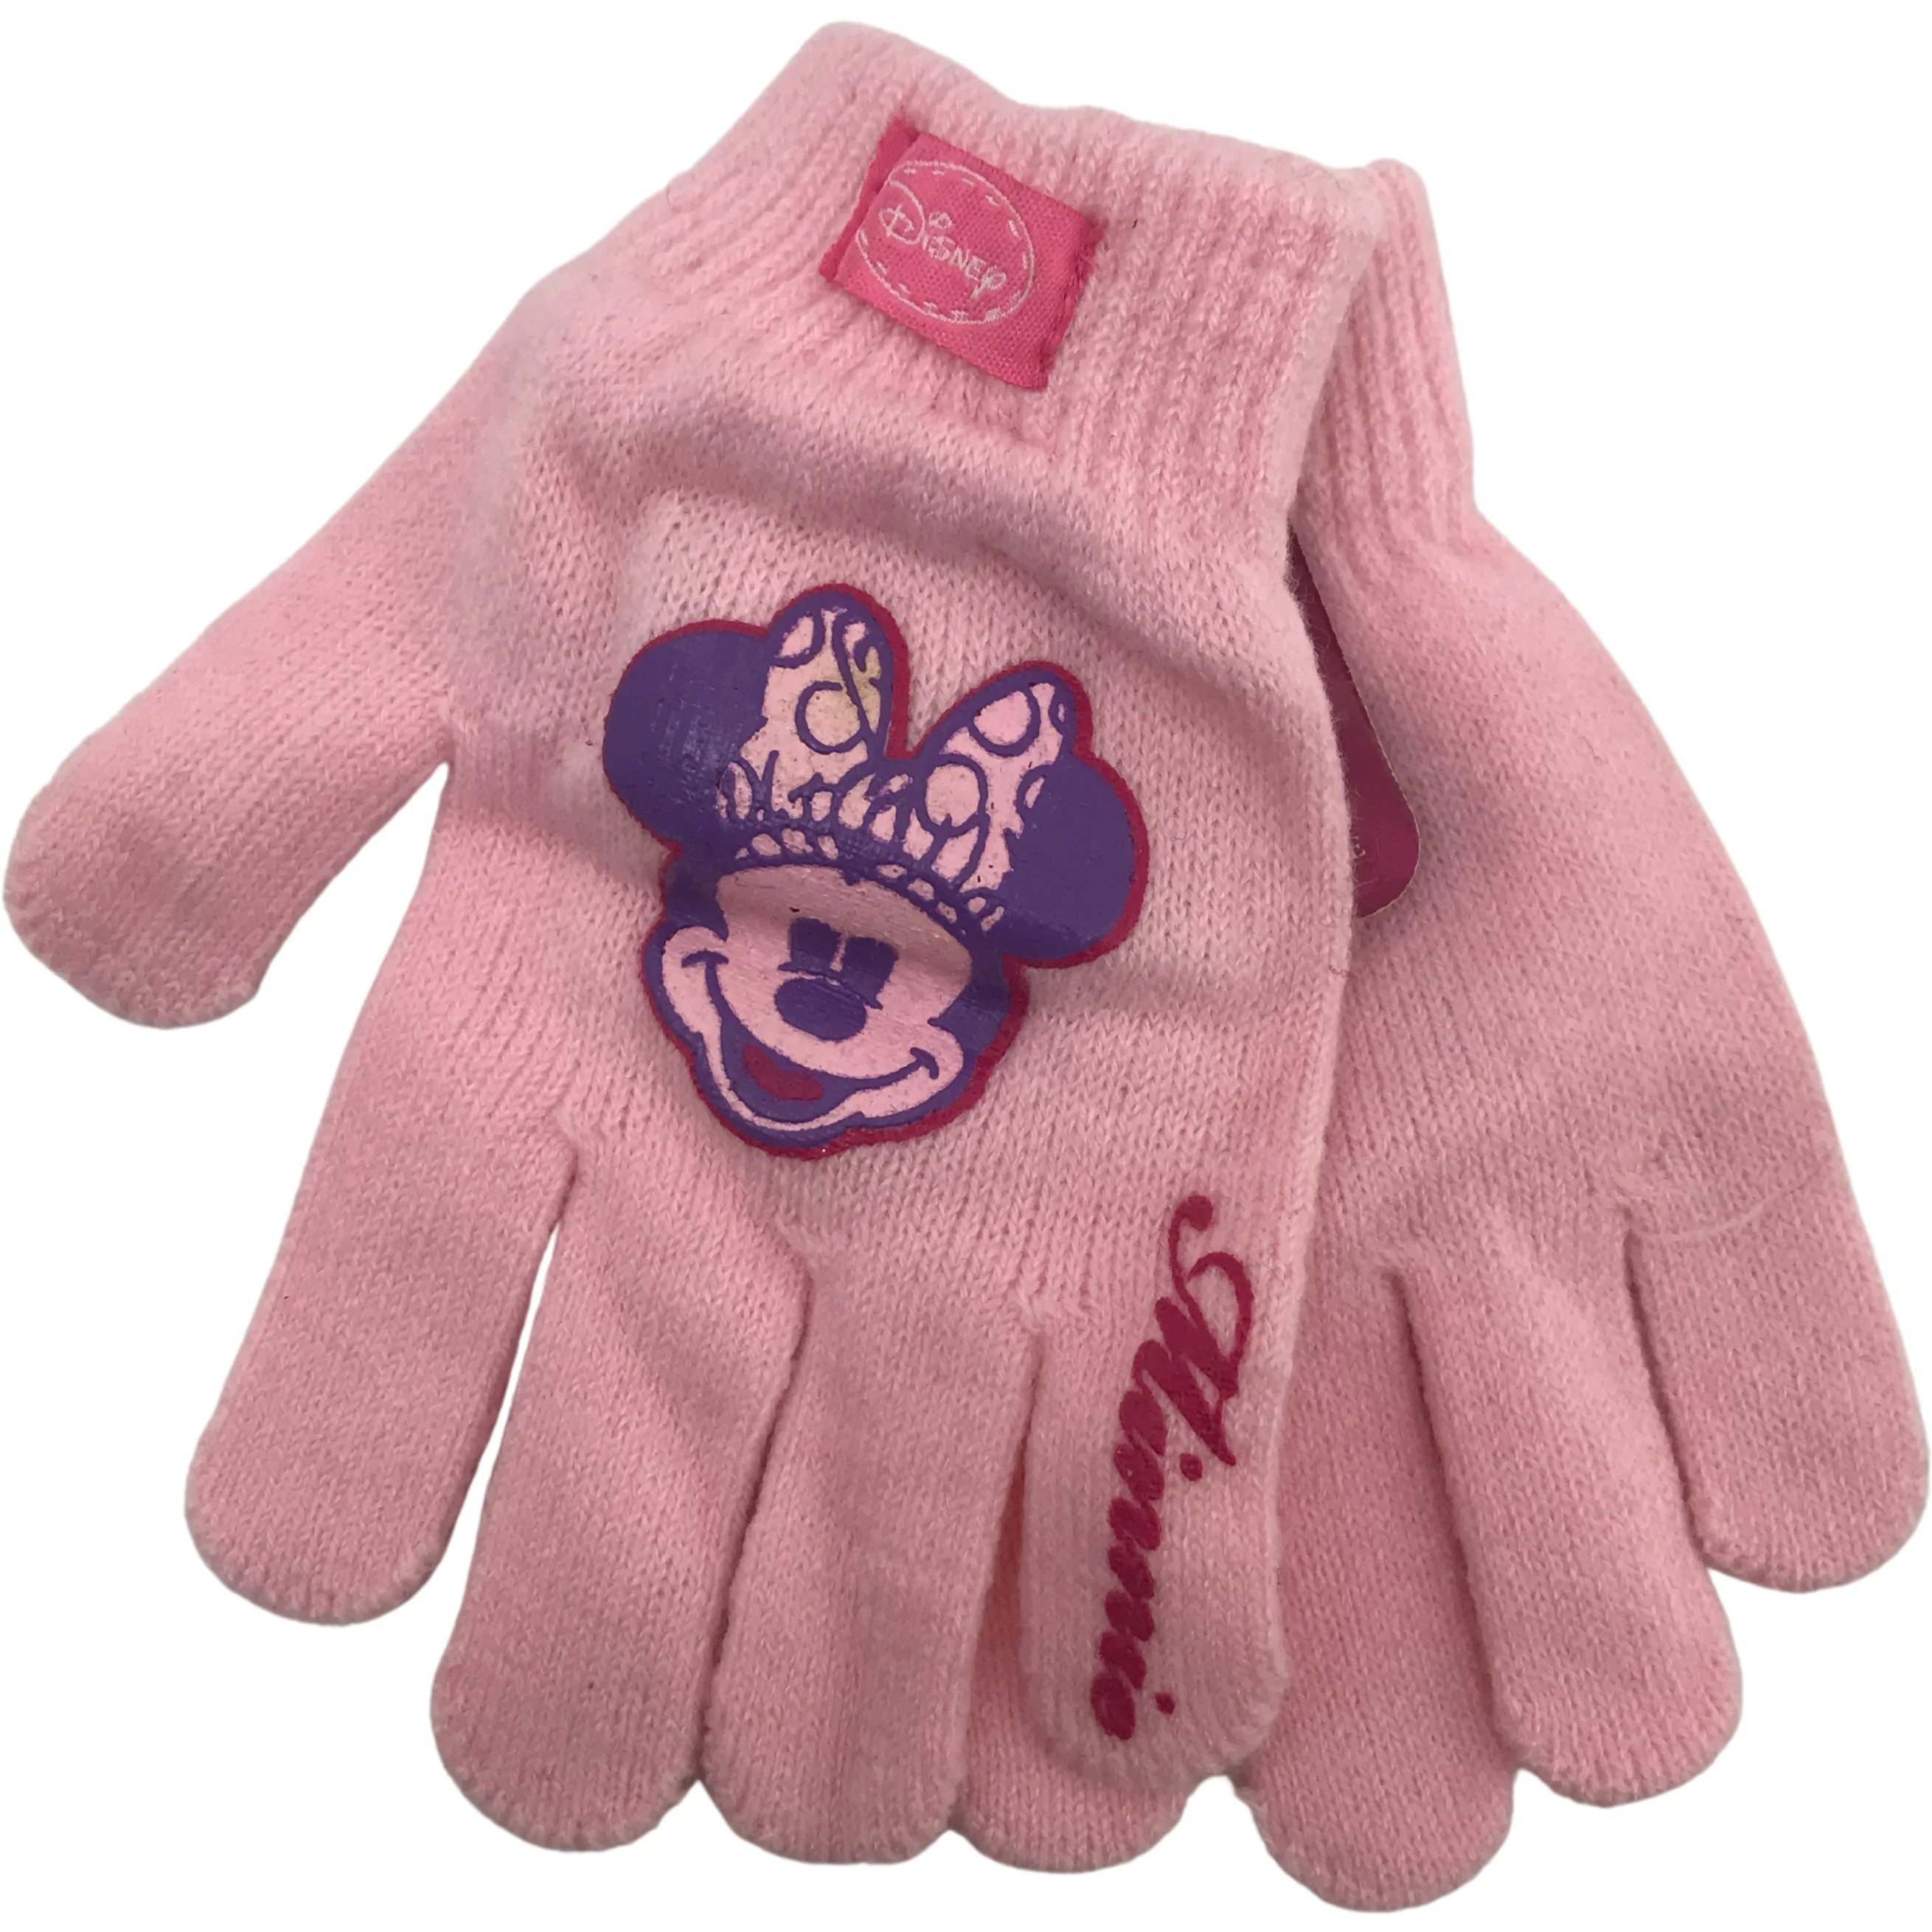 Disney Children's Winter Gloves / Girl's Gloves / Lightweight Gloves / Pink / One Size